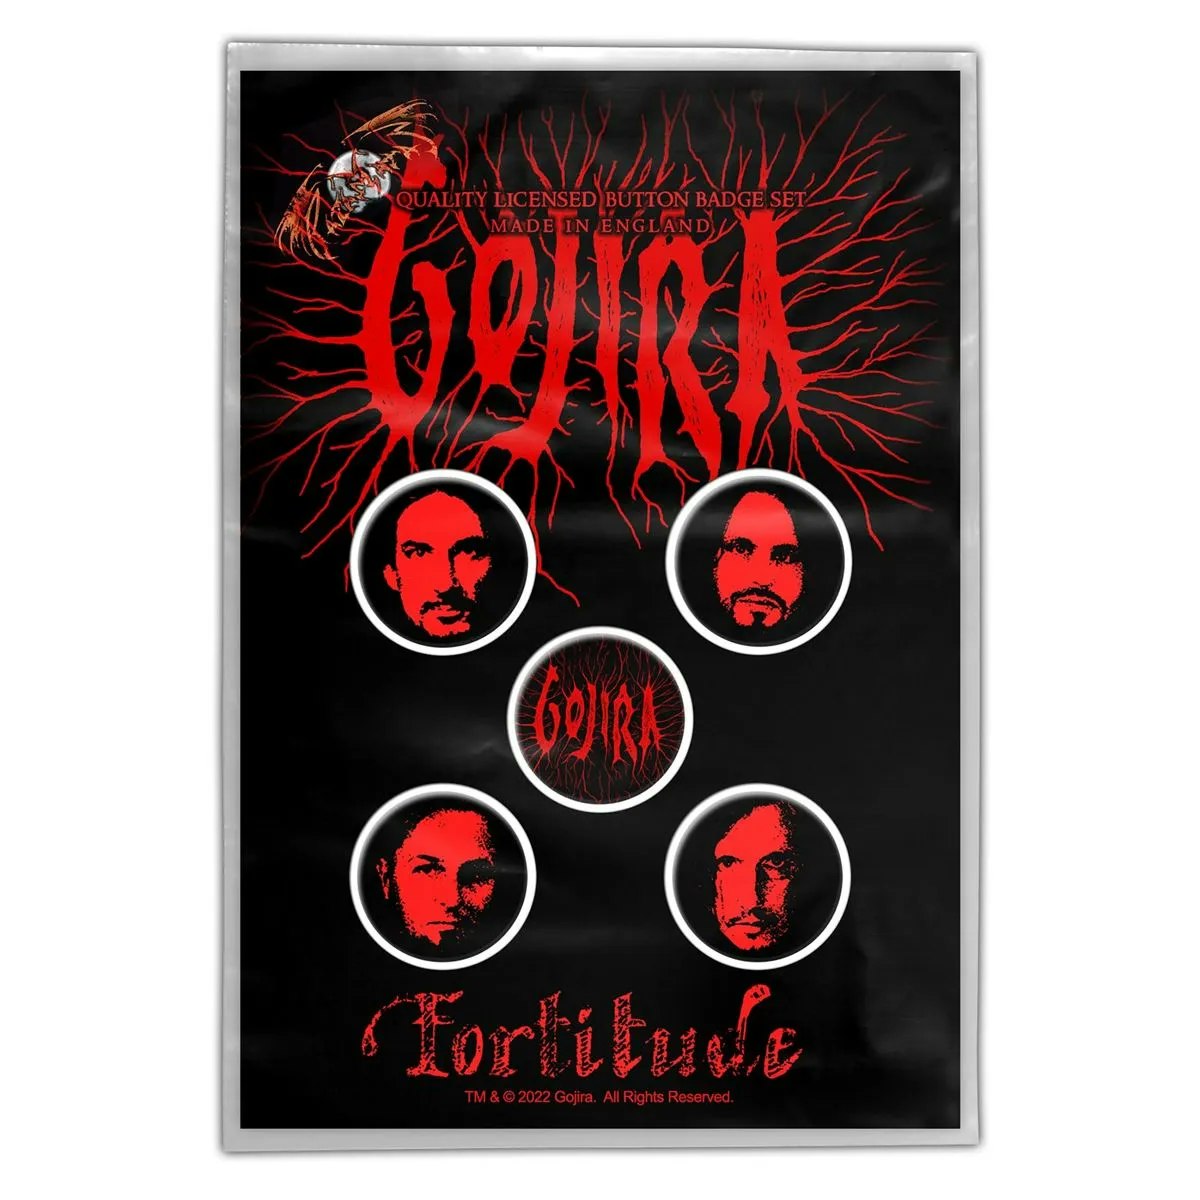 GOJIRA - FORTITUDE   5-pack badge